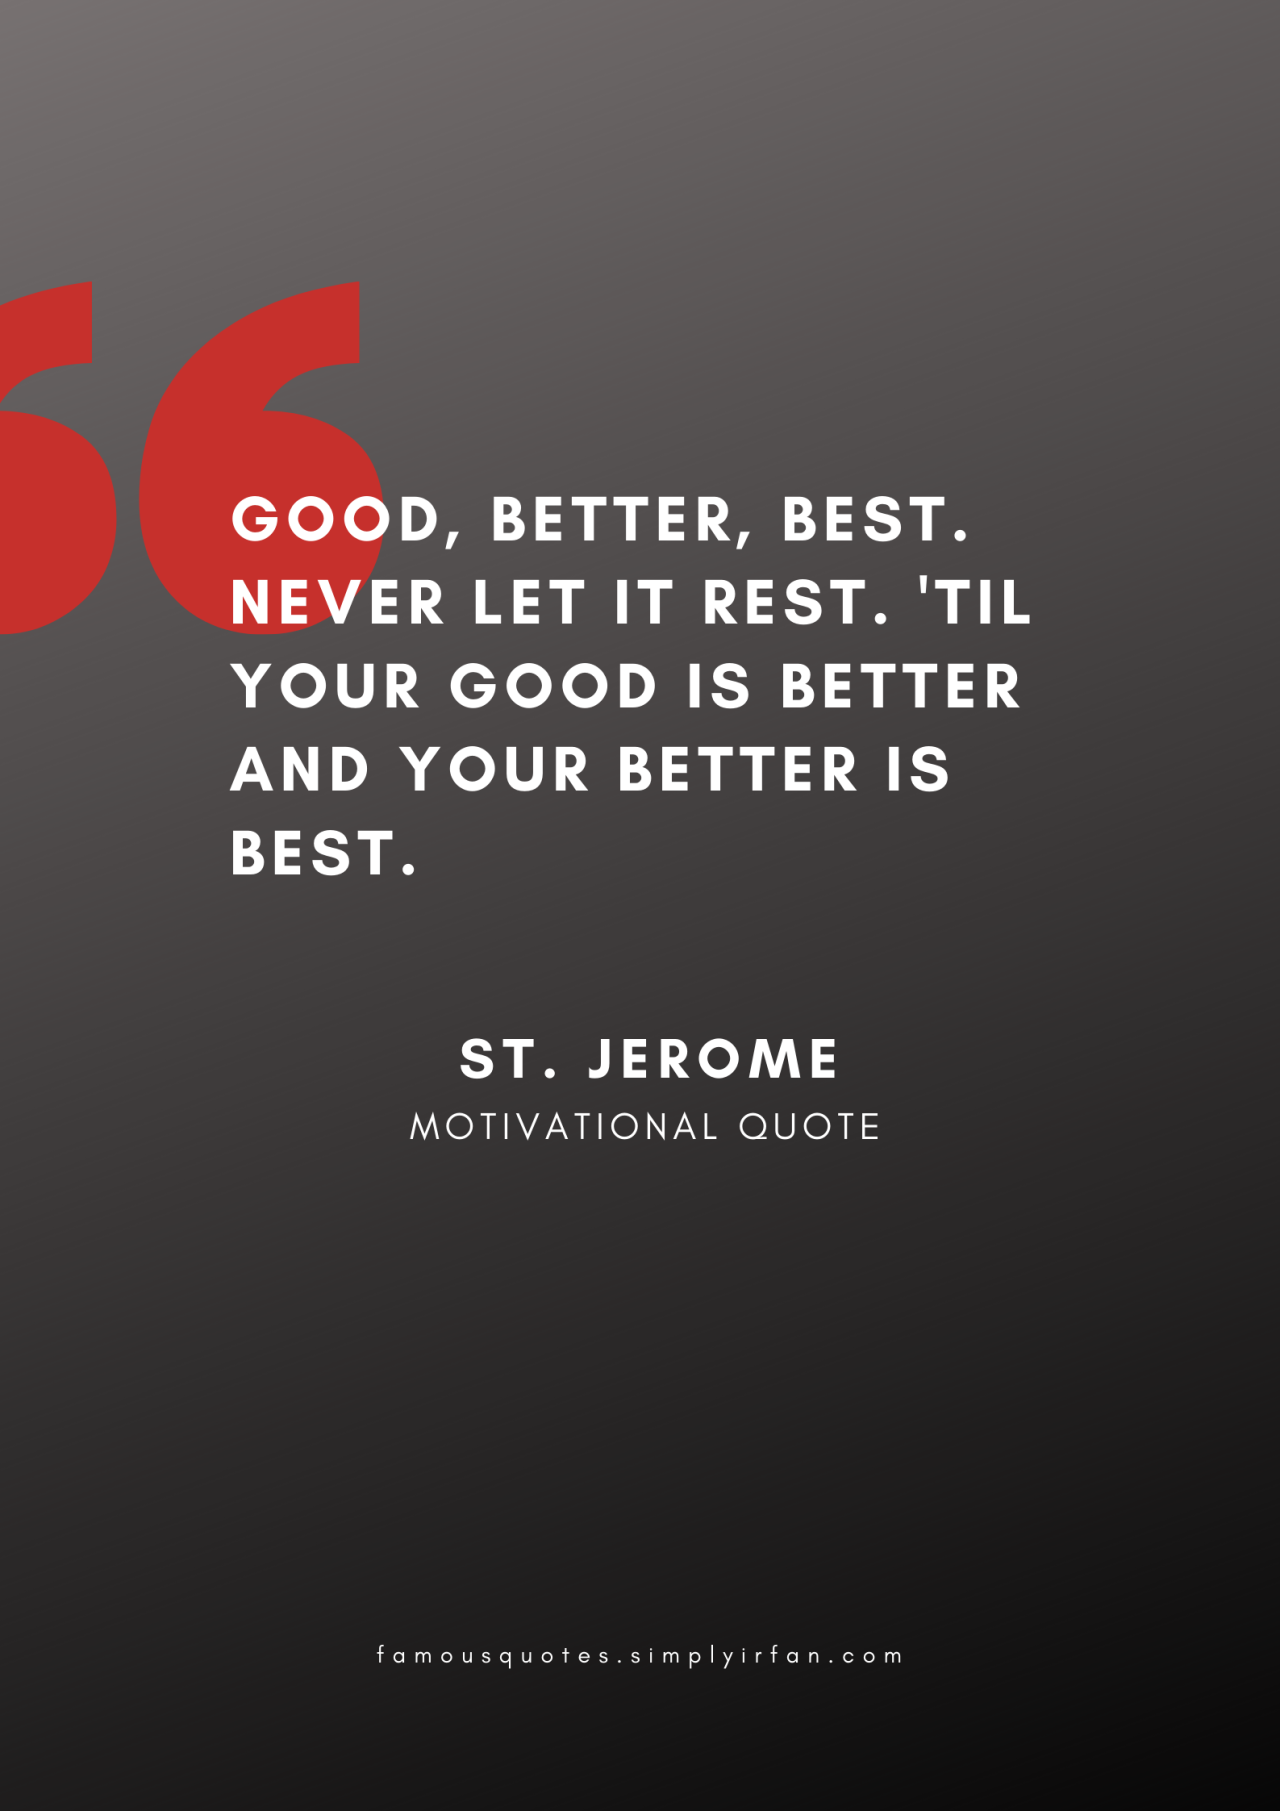 Good, better, best. Never let it rest. ‘Til your good is better and your better is best. Quote by St. Jerome